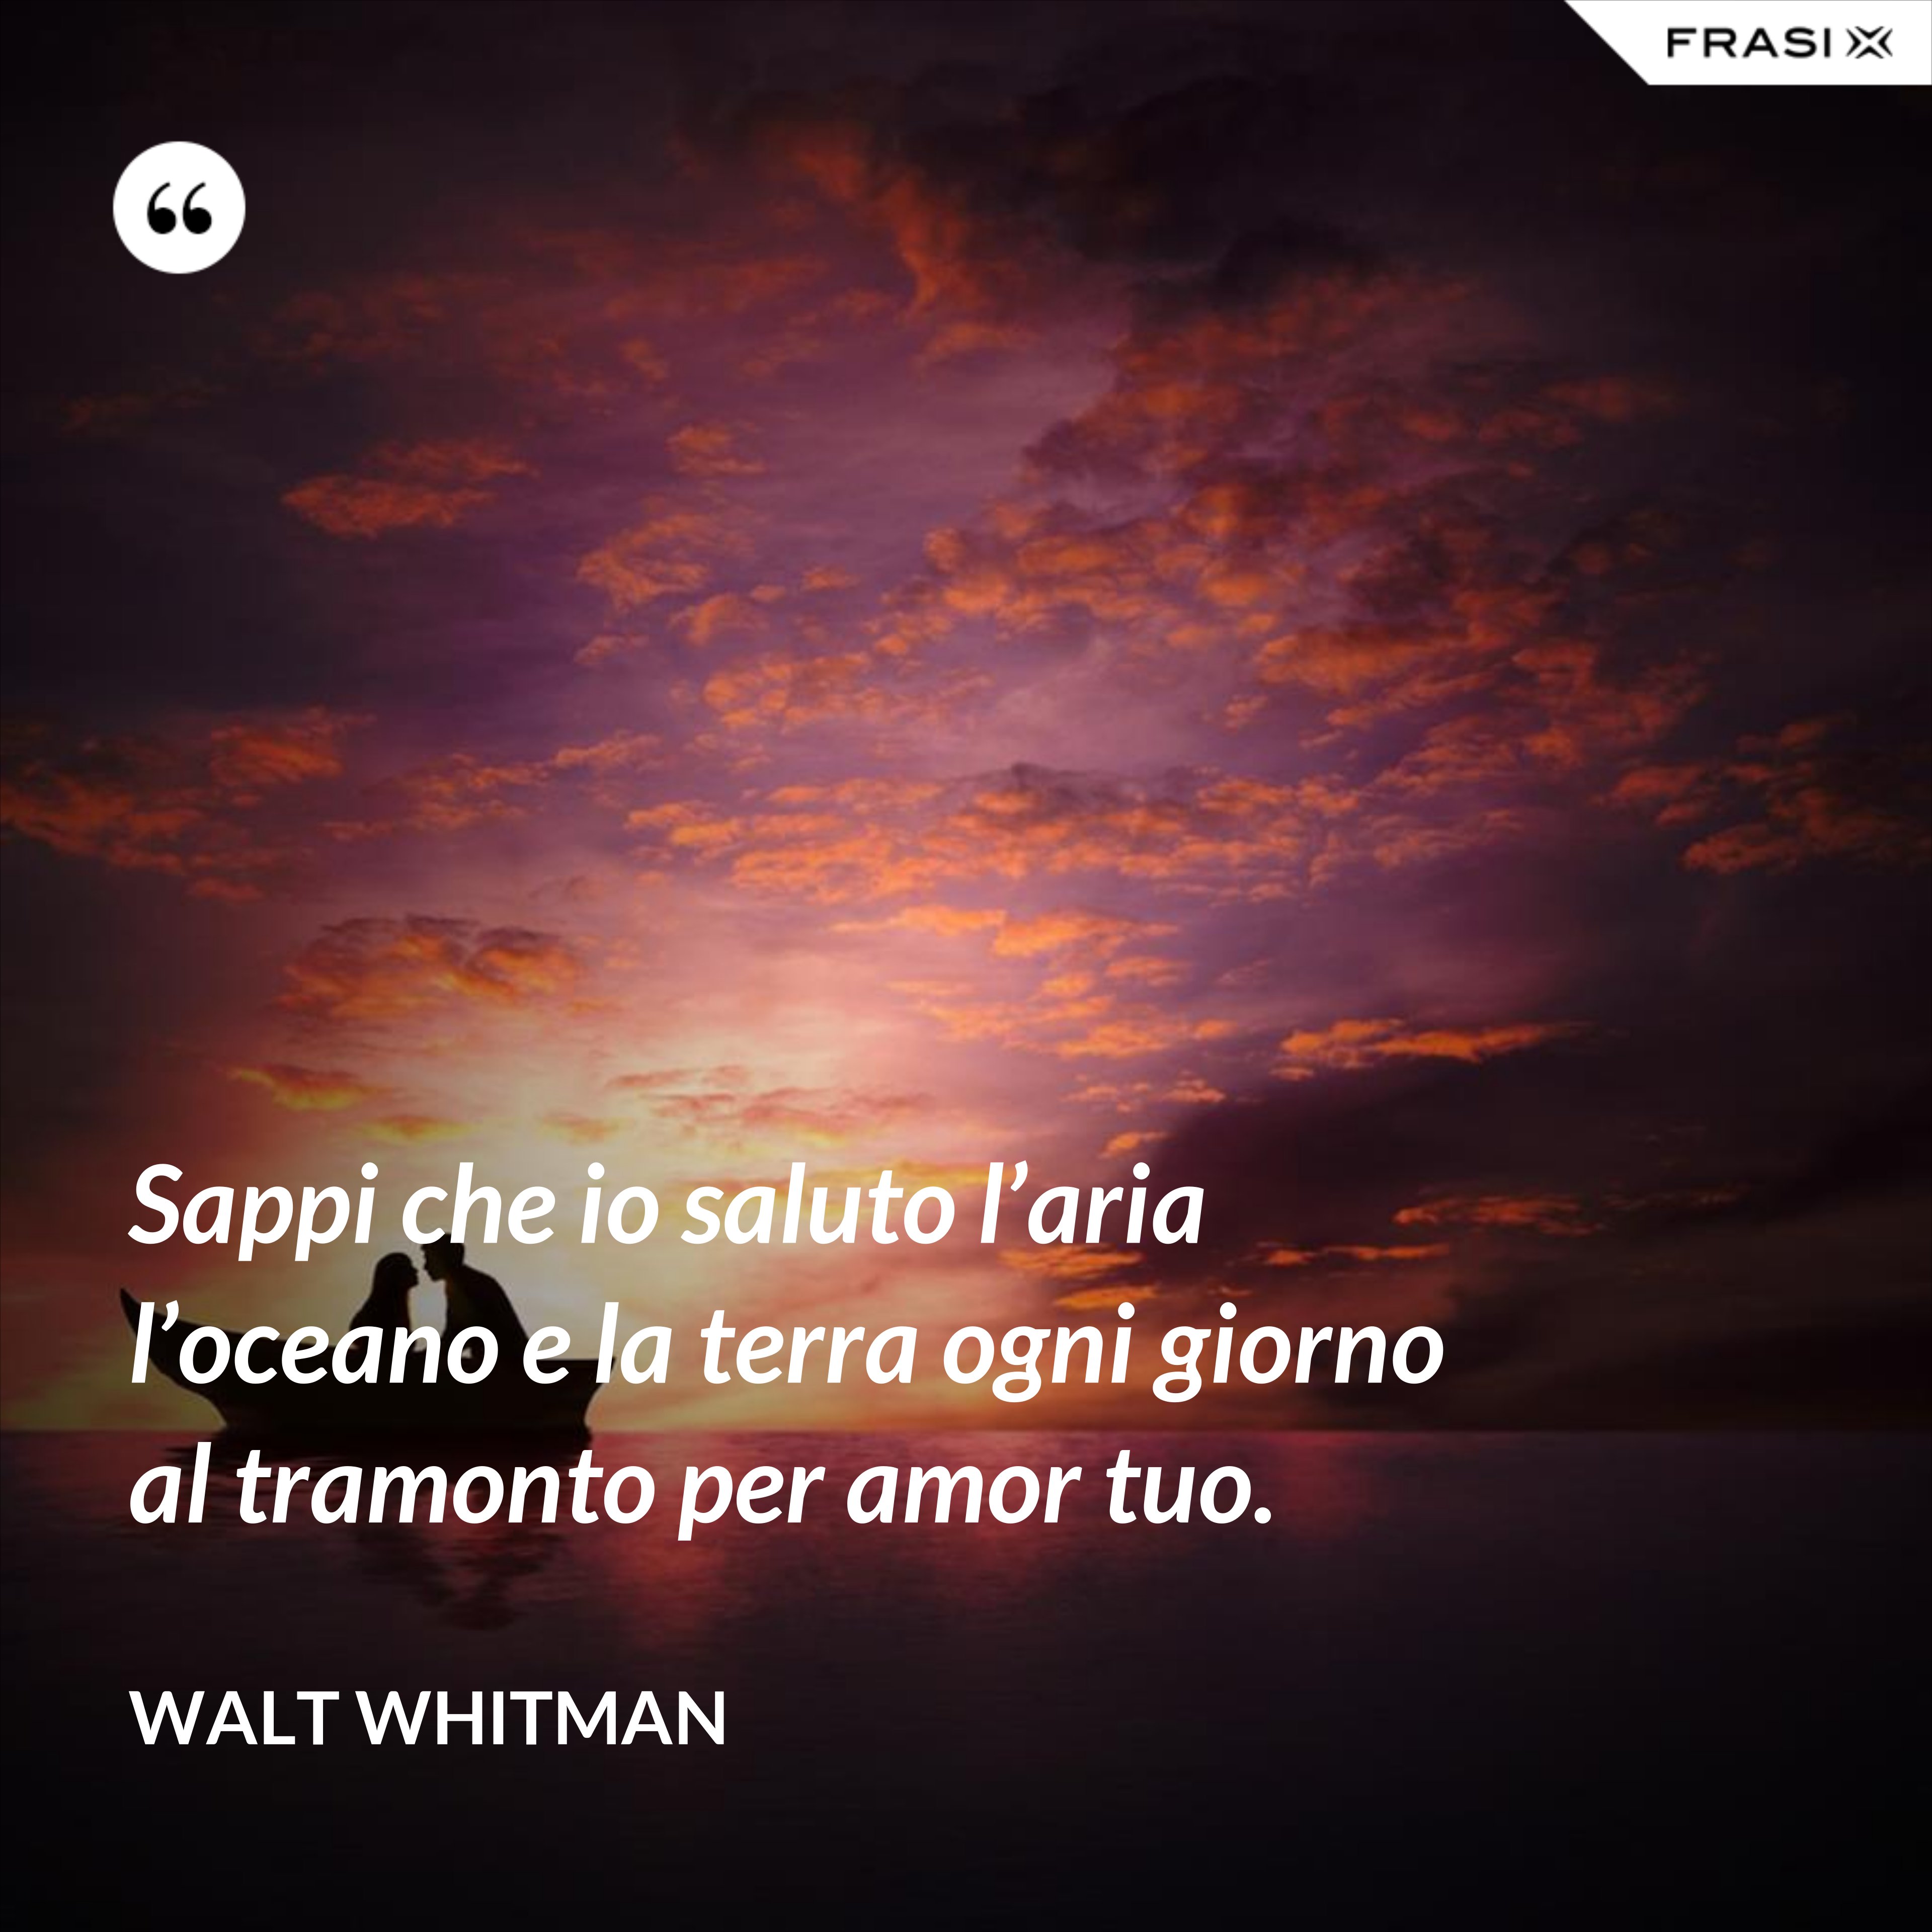 Sappi che io saluto l’aria l’oceano e la terra ogni giorno al tramonto per amor tuo. - Walt Whitman